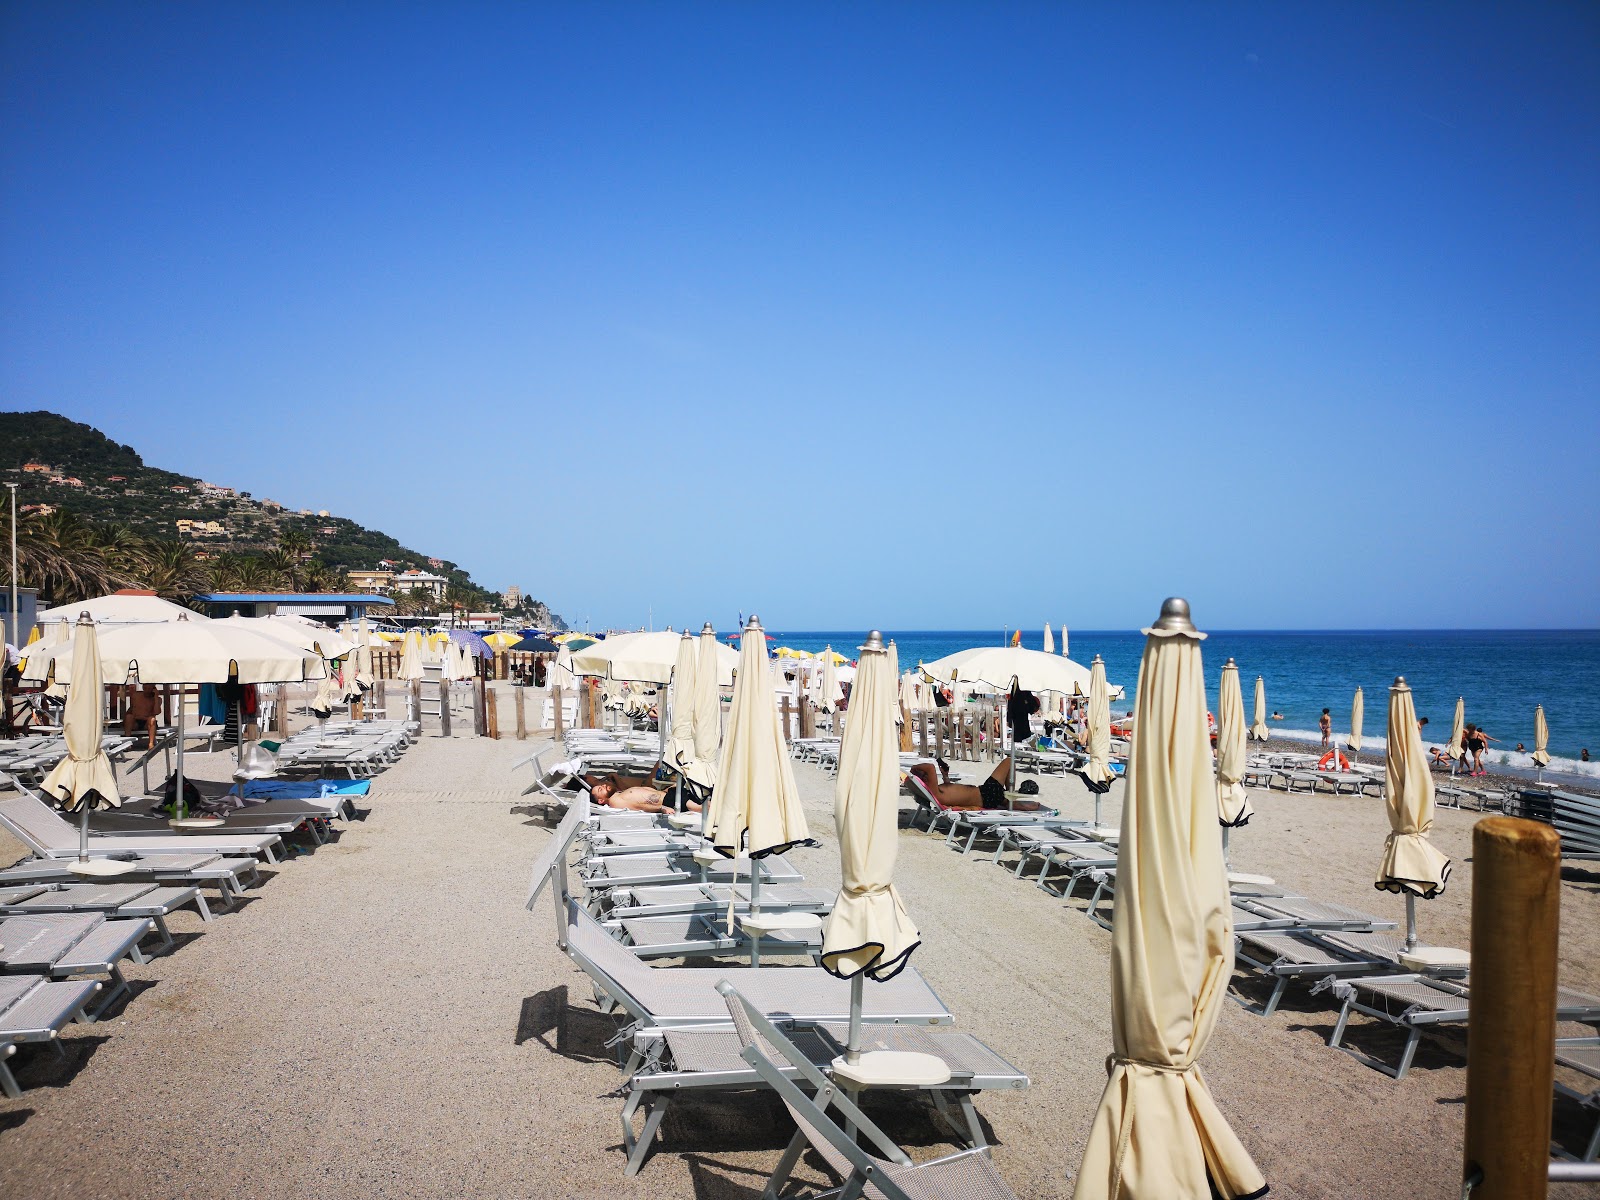 Photo de Spiaggia libera Attrezzata - endroit populaire parmi les connaisseurs de la détente